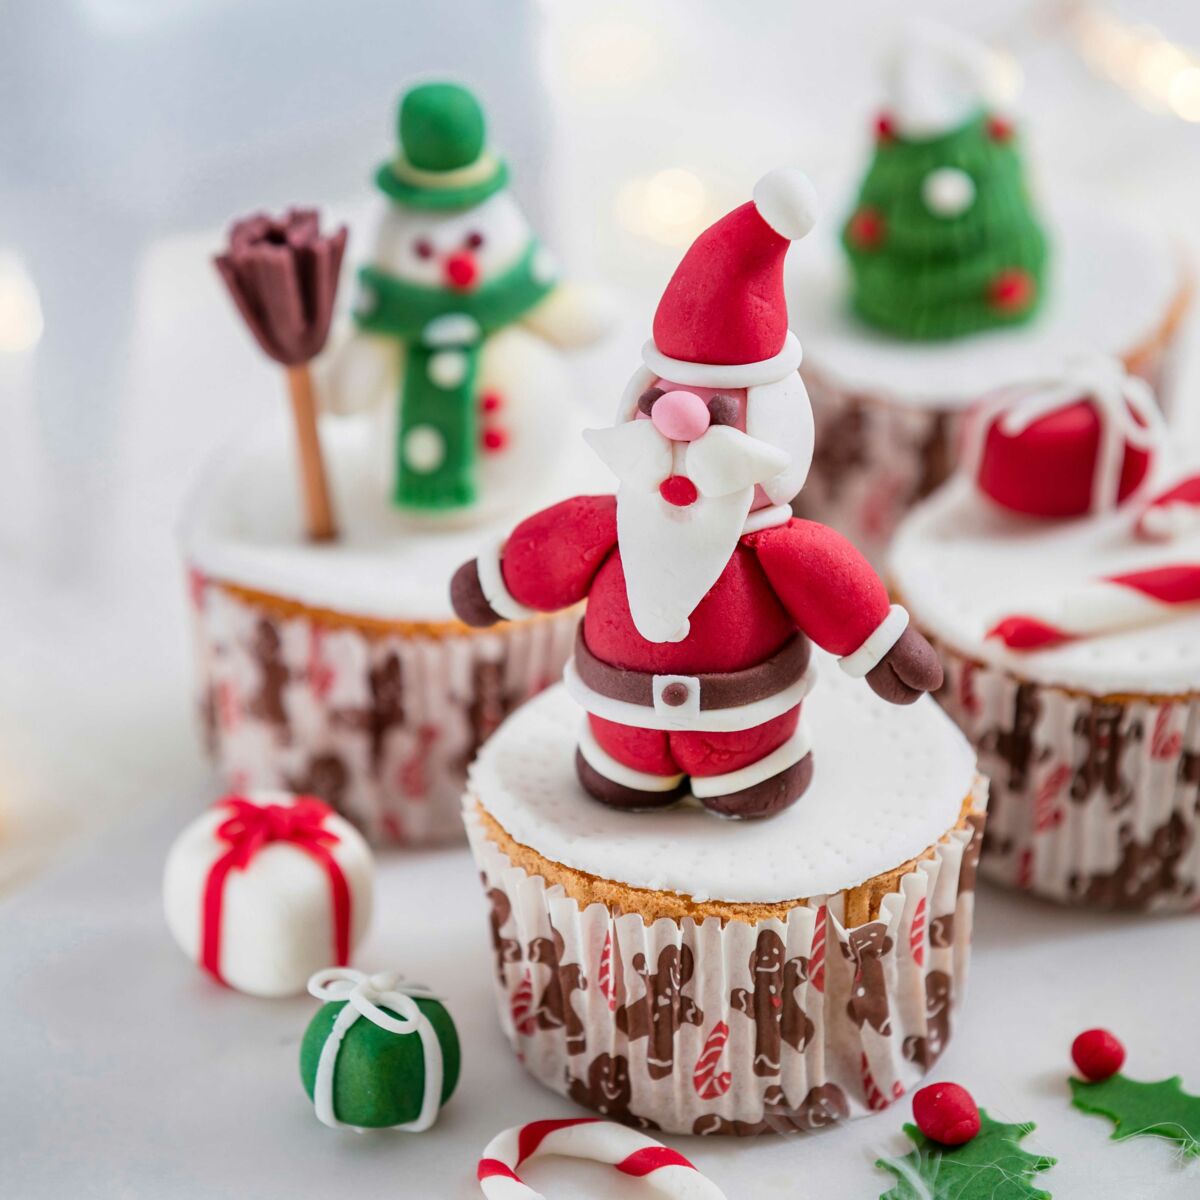 Noël en pâte à sucre - Décors et recettes